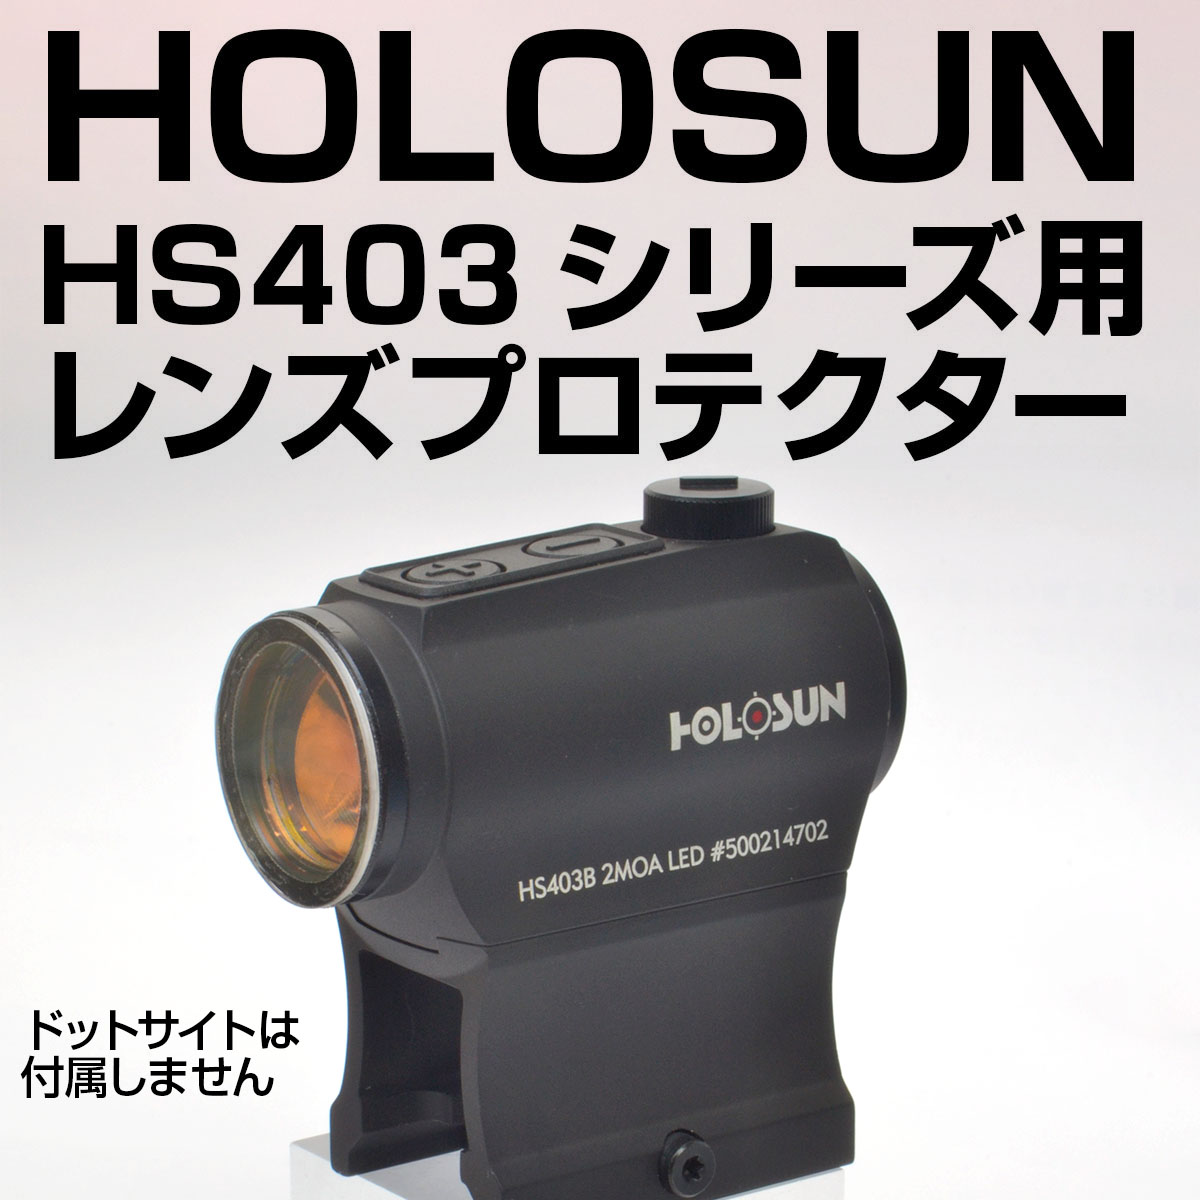 HOLOSUN HS403シリーズ専用プロテクター画像